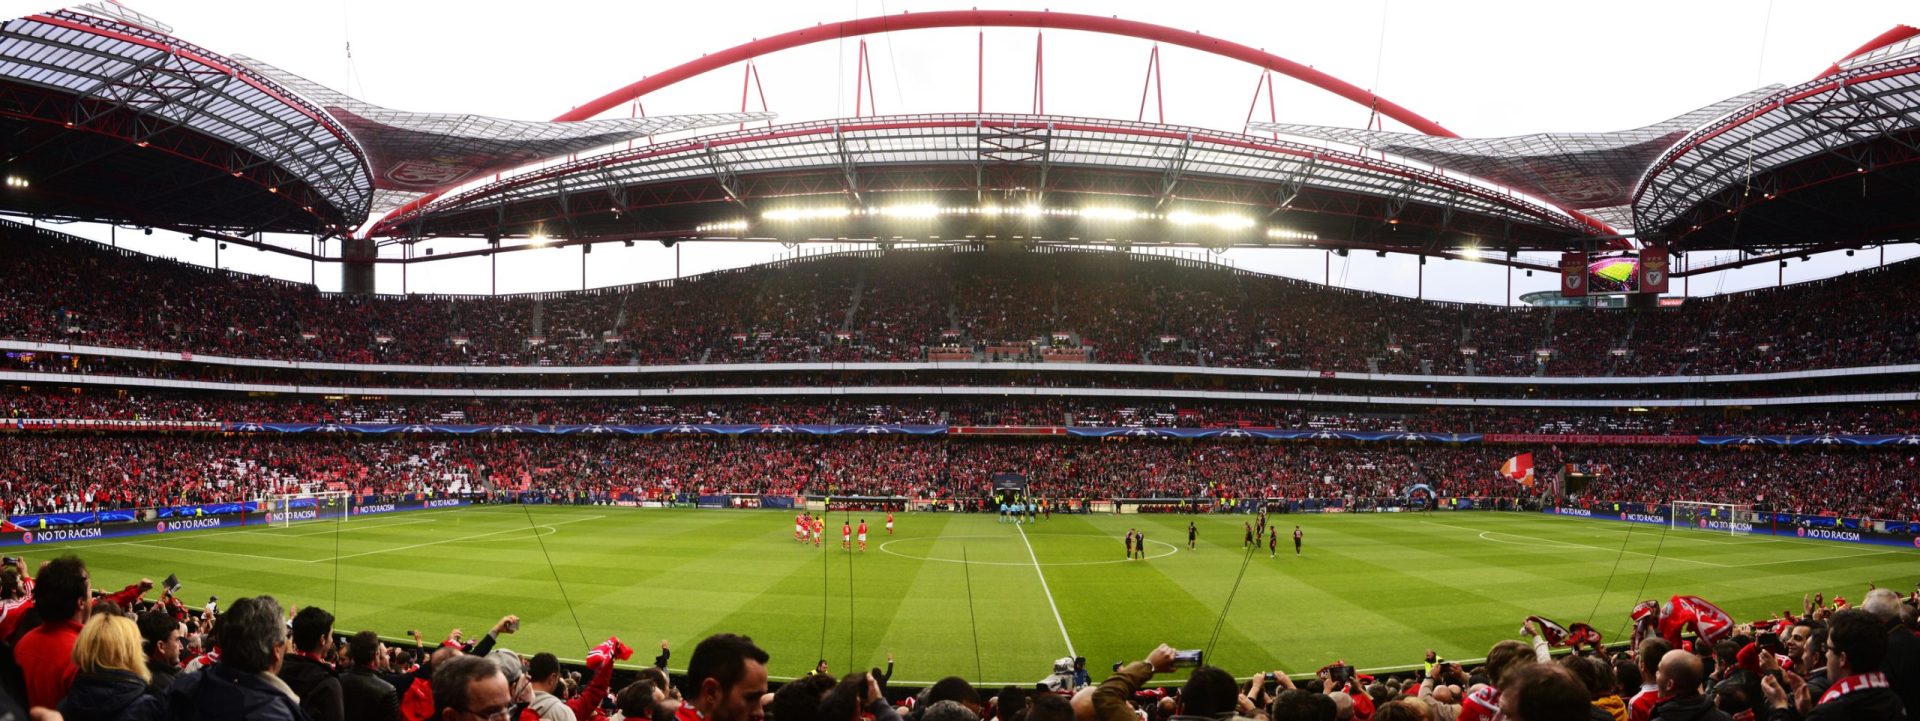 Benfica reage a detenção de hacker